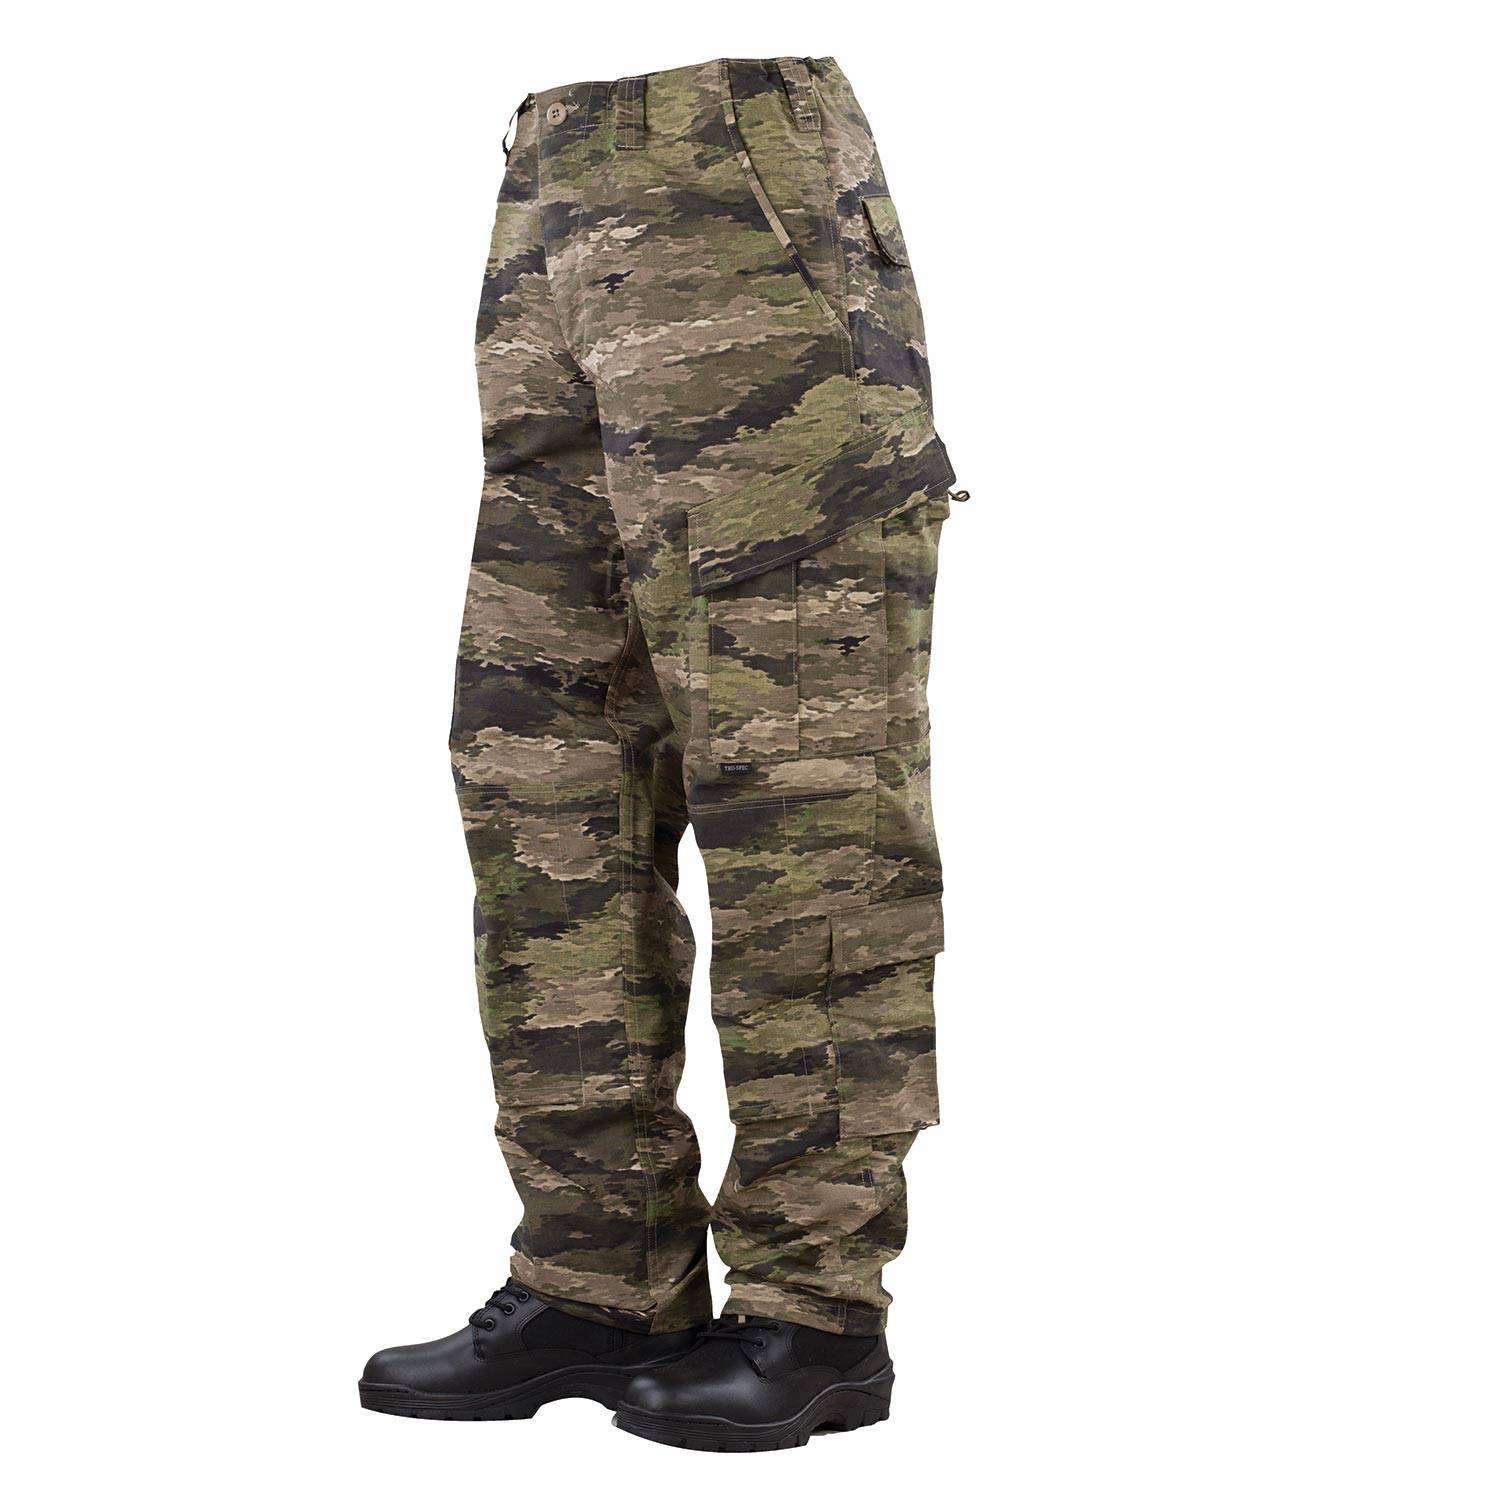 TRU-SPEC Tactical Response Uniform (TRU) Pants